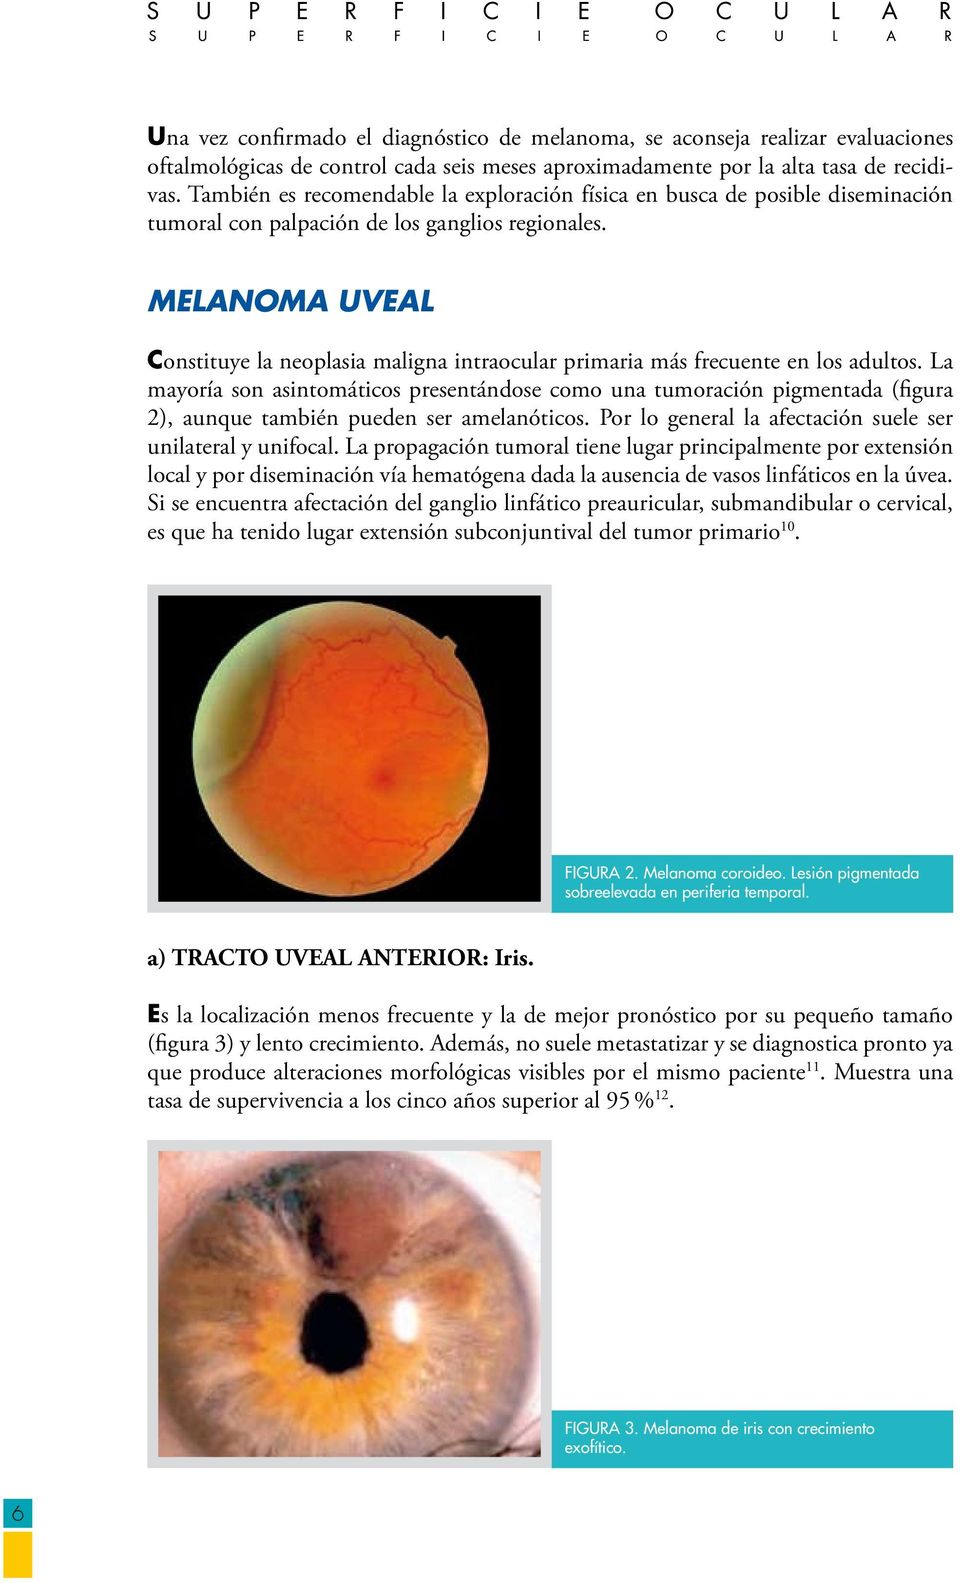 MELANOMA UVEAL Constituye la neoplasia maligna intraocular primaria más frecuente en los adultos.